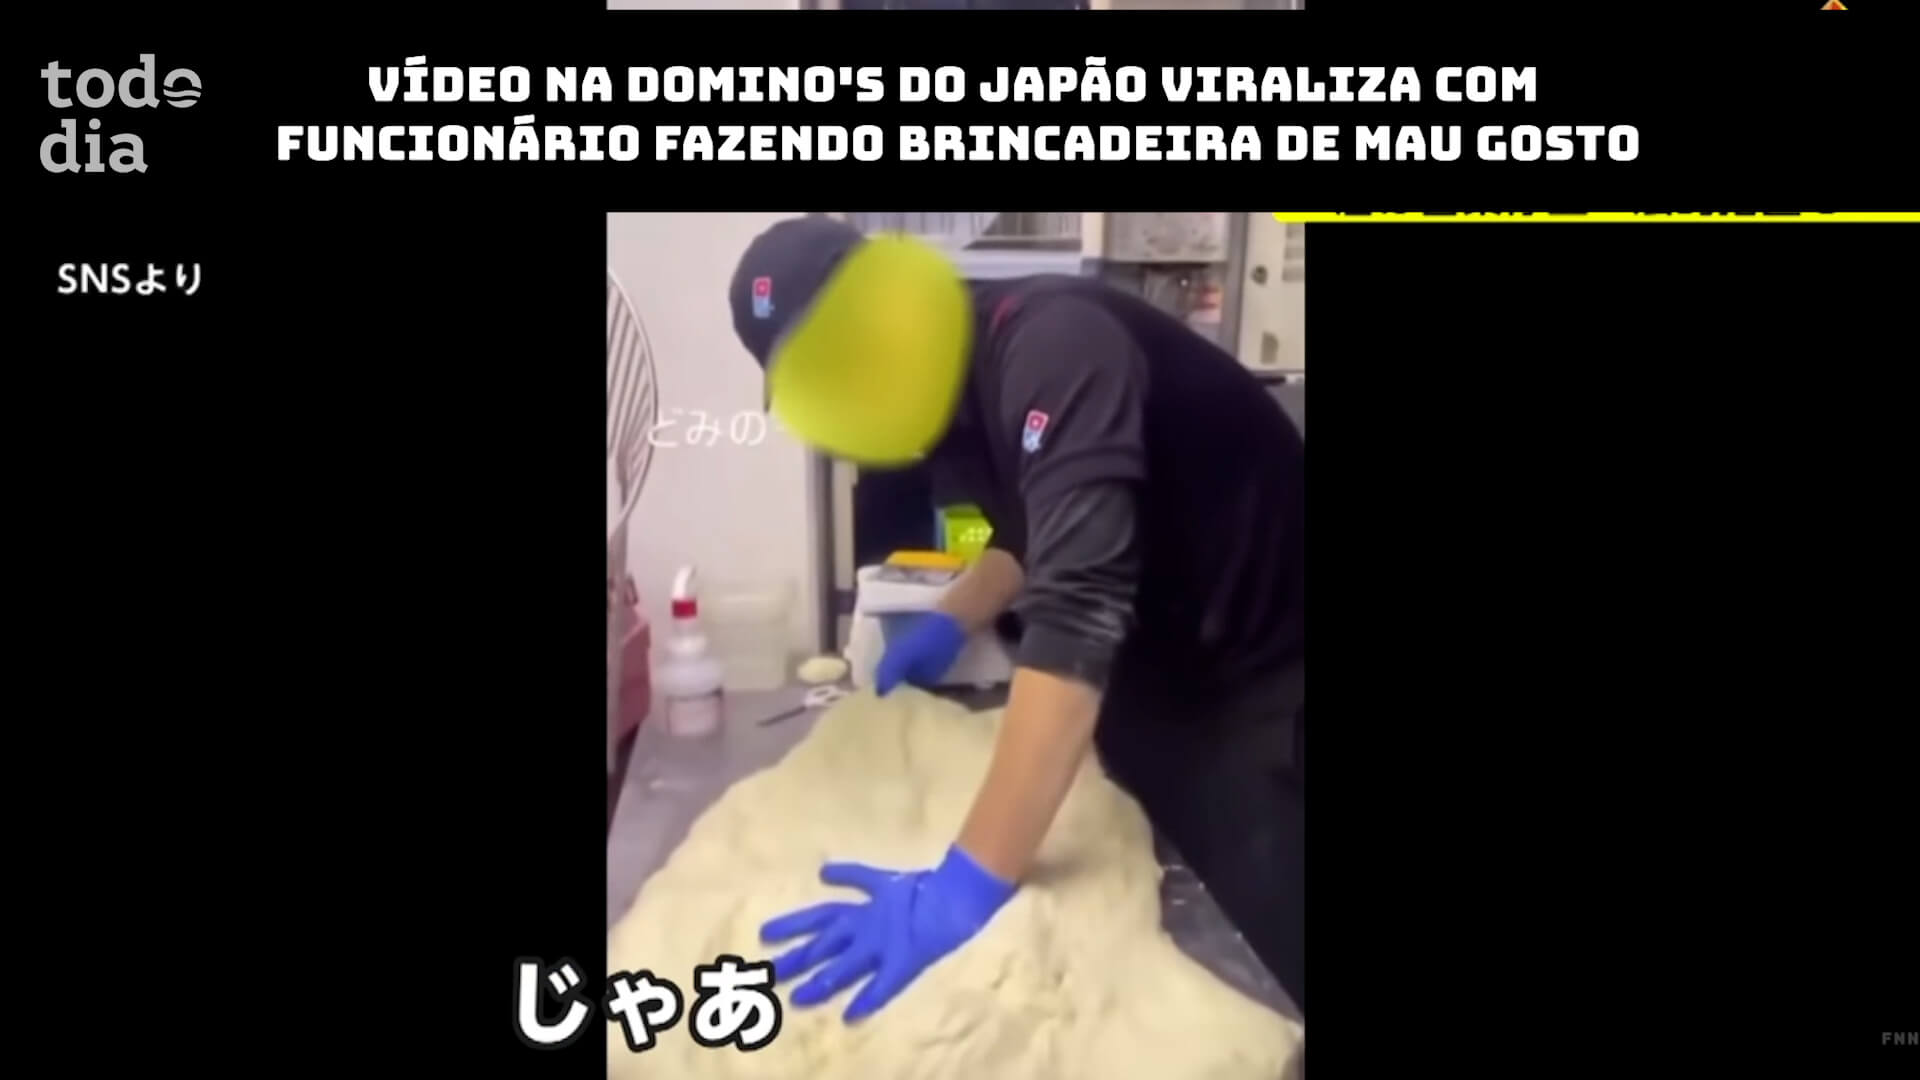 Vídeo na Domino’s do Japão viraliza com funcionário fazendo brincadeira de mau gosto